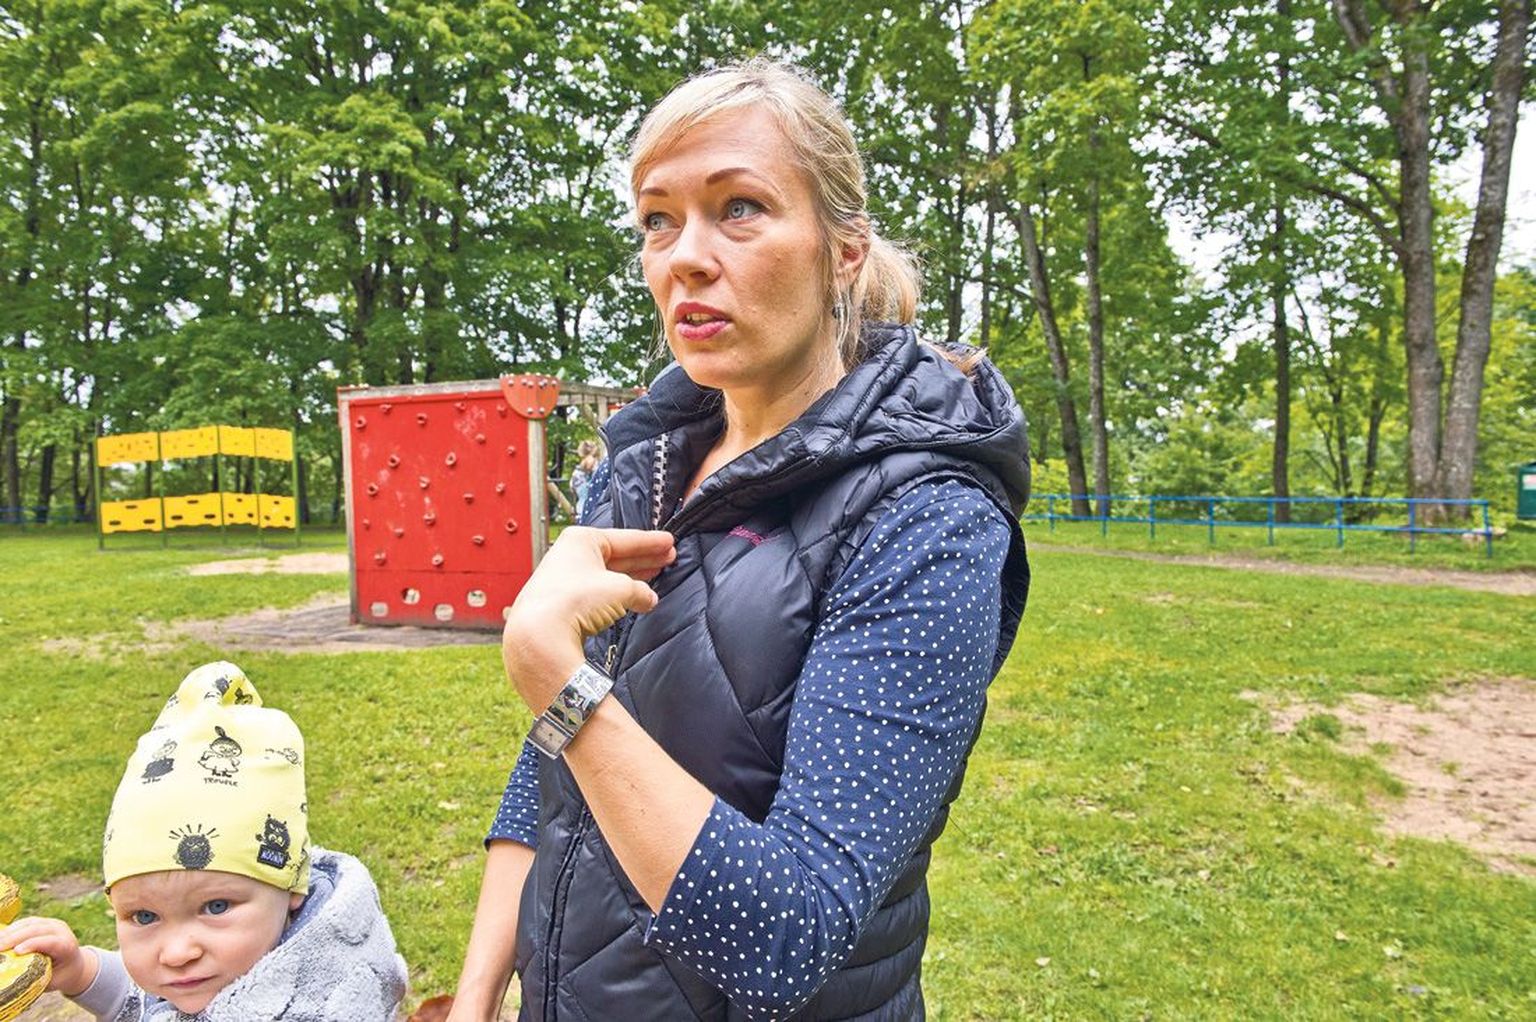 Treener Kati Kruusaauk käib tütre Karoliinaga Toomemäe nõlval laste mänguplatsil aega veetmas. Tal on veel meeles aeg, mil tal tuli oma last hoida just sellises asendis, mida ta siin pildil näitab.